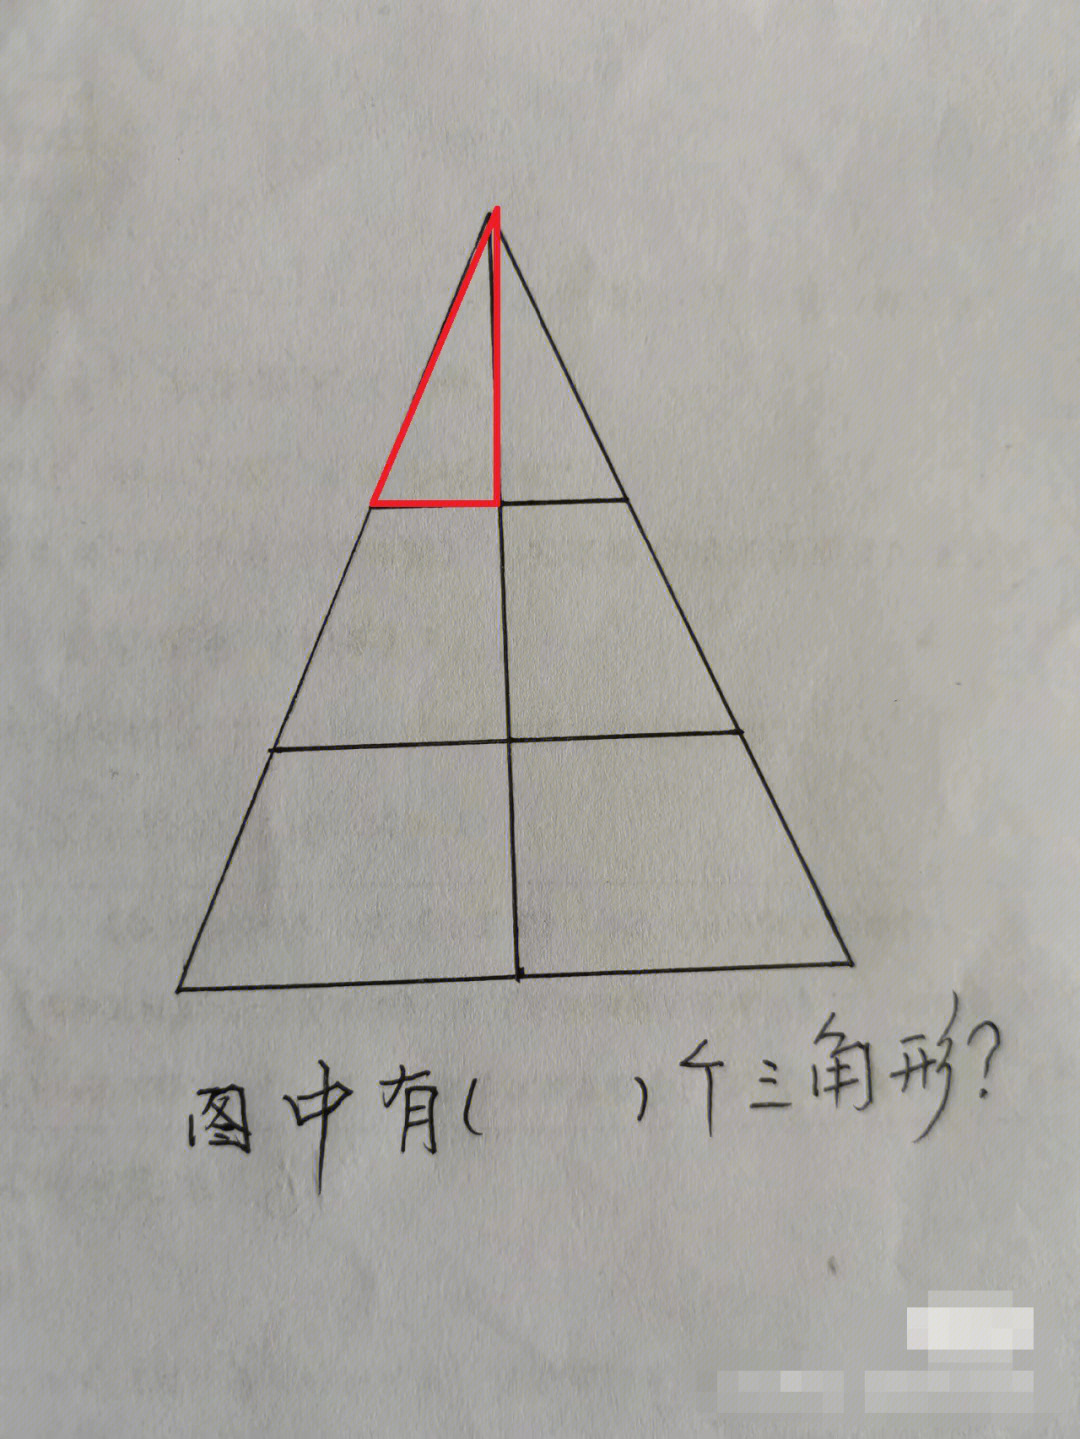 数三角形图解图片